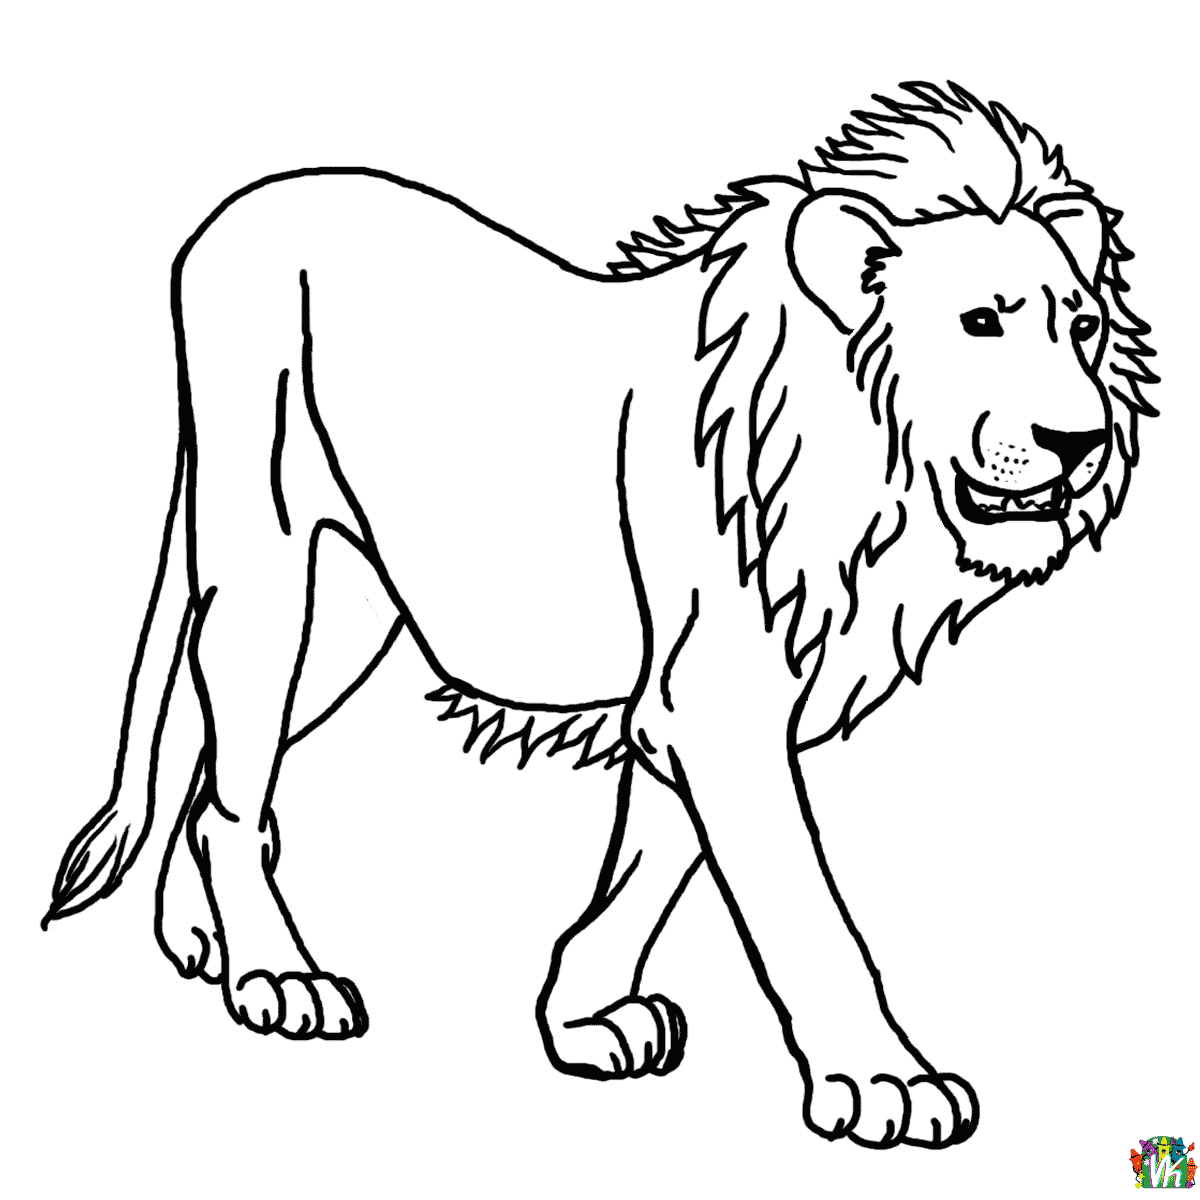 Leijonat-varityskuvat (5)